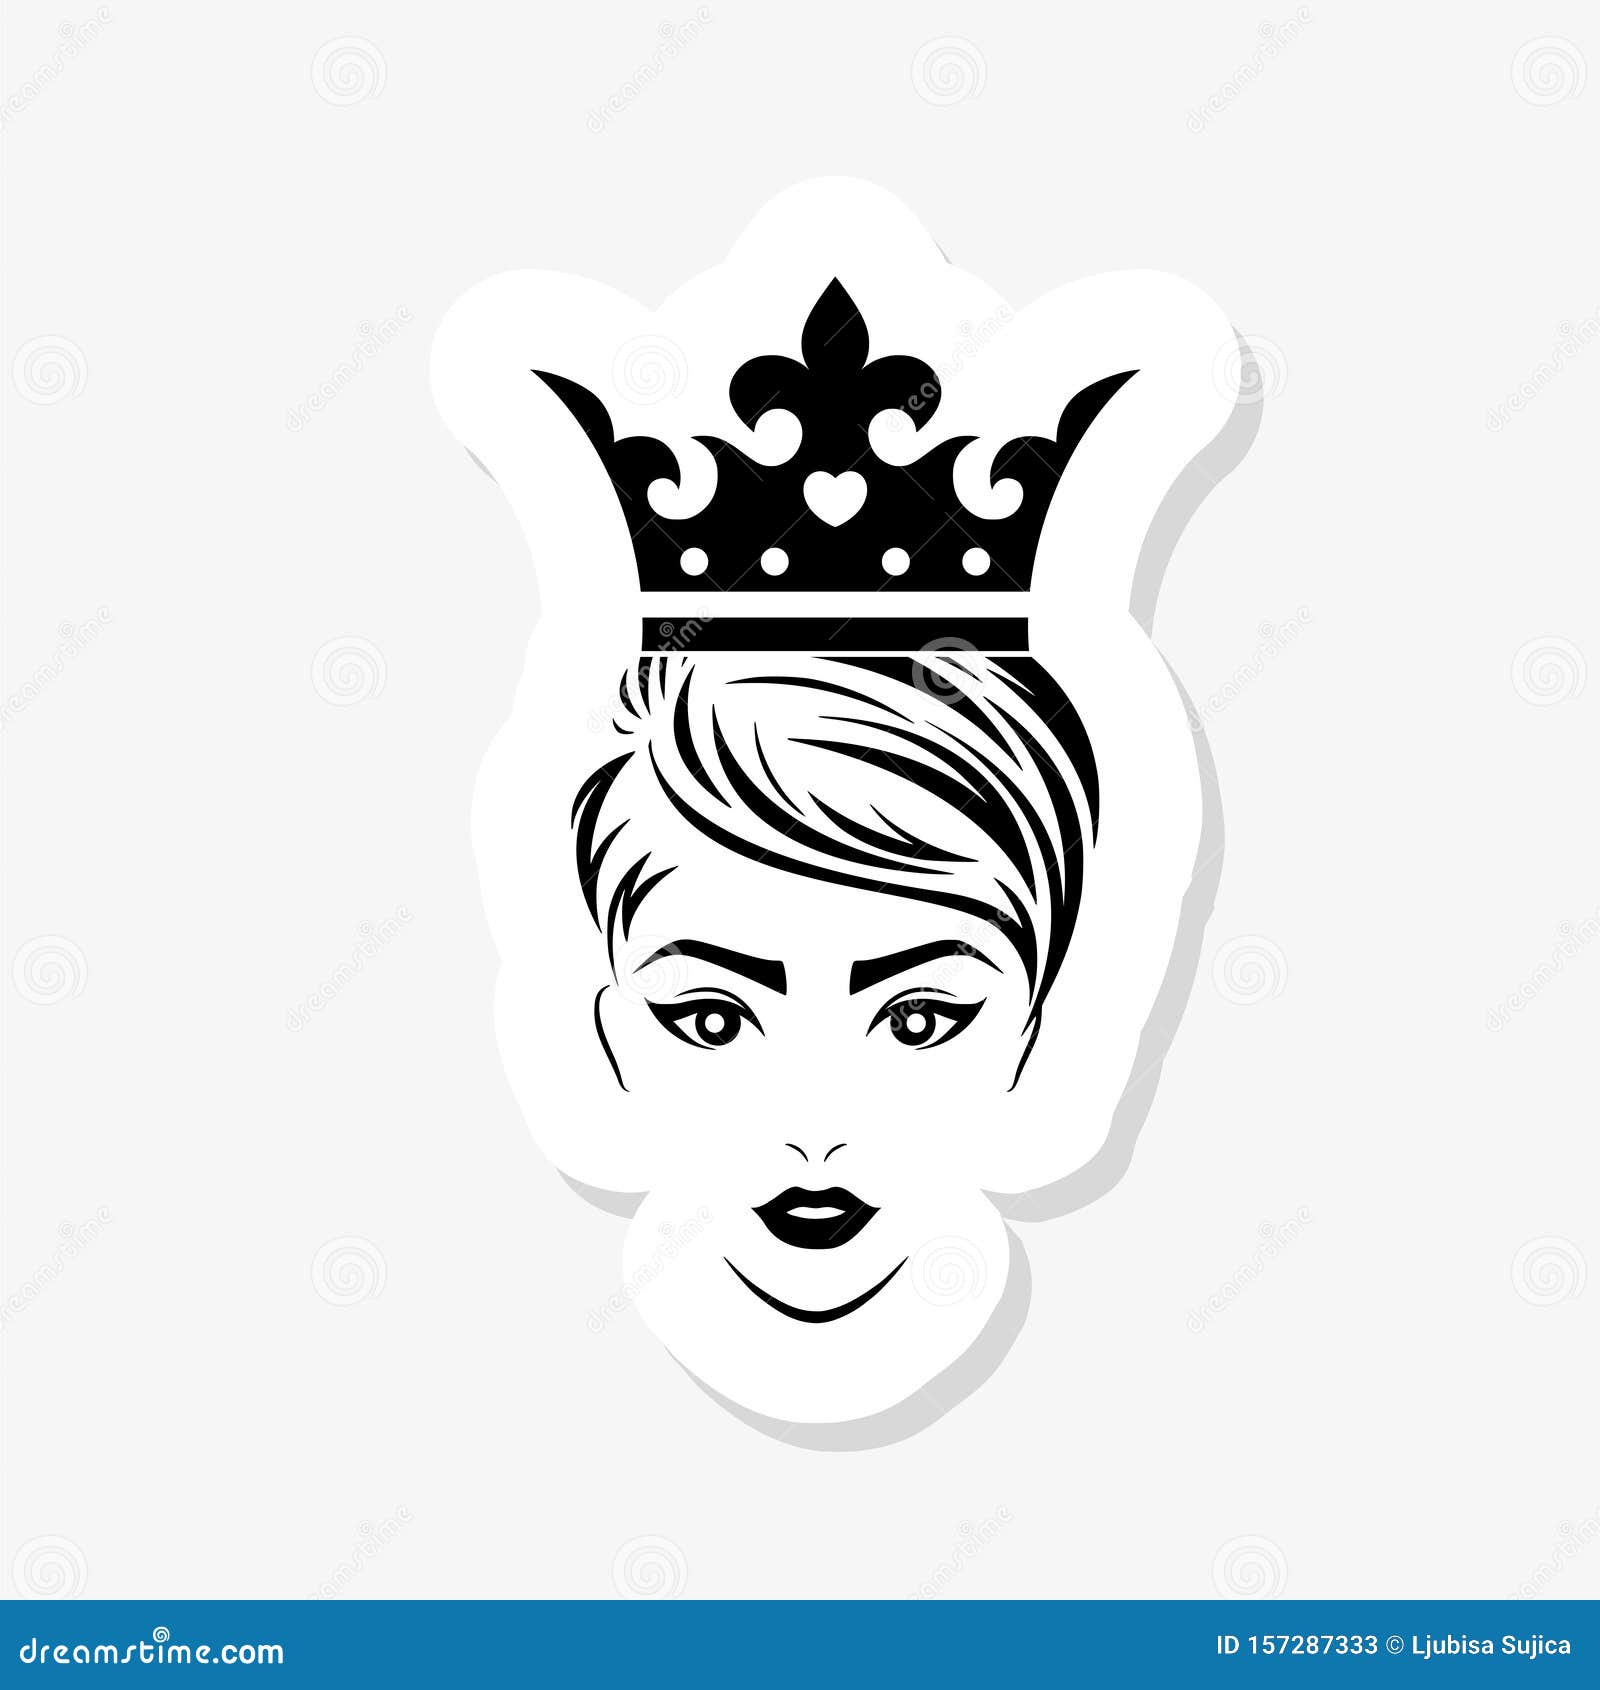 Bộ sticker nữ hoàng đơn giản được cô lập trên nền trắng - một câu chuyện hoàn toàn khác. Với thiết kế đơn giản nhưng không kém phần sang trọng, sticker nữ hoàng này thật sự là một siêu phẩm của công nghệ. Hãy xem chi tiết các đường nét hoa văn và họa tiết, bạn sẽ cảm thấy những chiếc sticker này thực sự đáng để sưu tập.